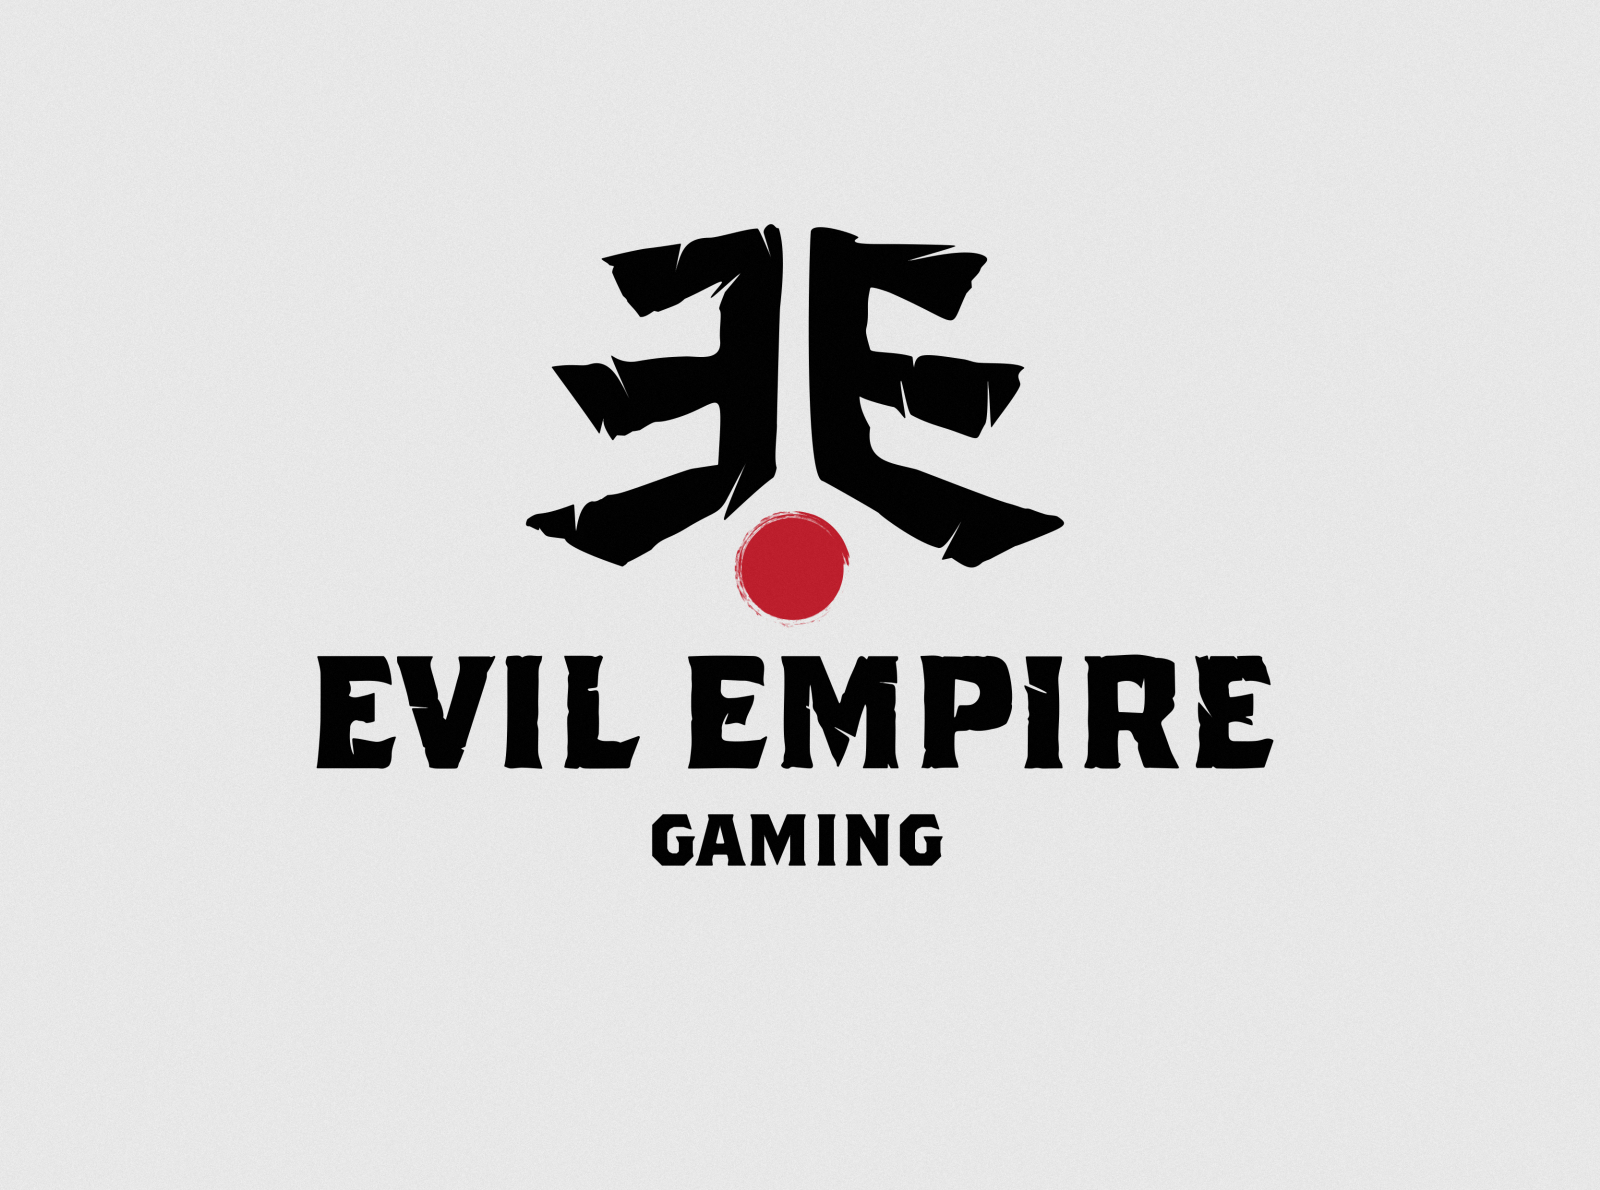 Evil Empire Gaming logo by Mihail Zhelyazkov on Dribbble